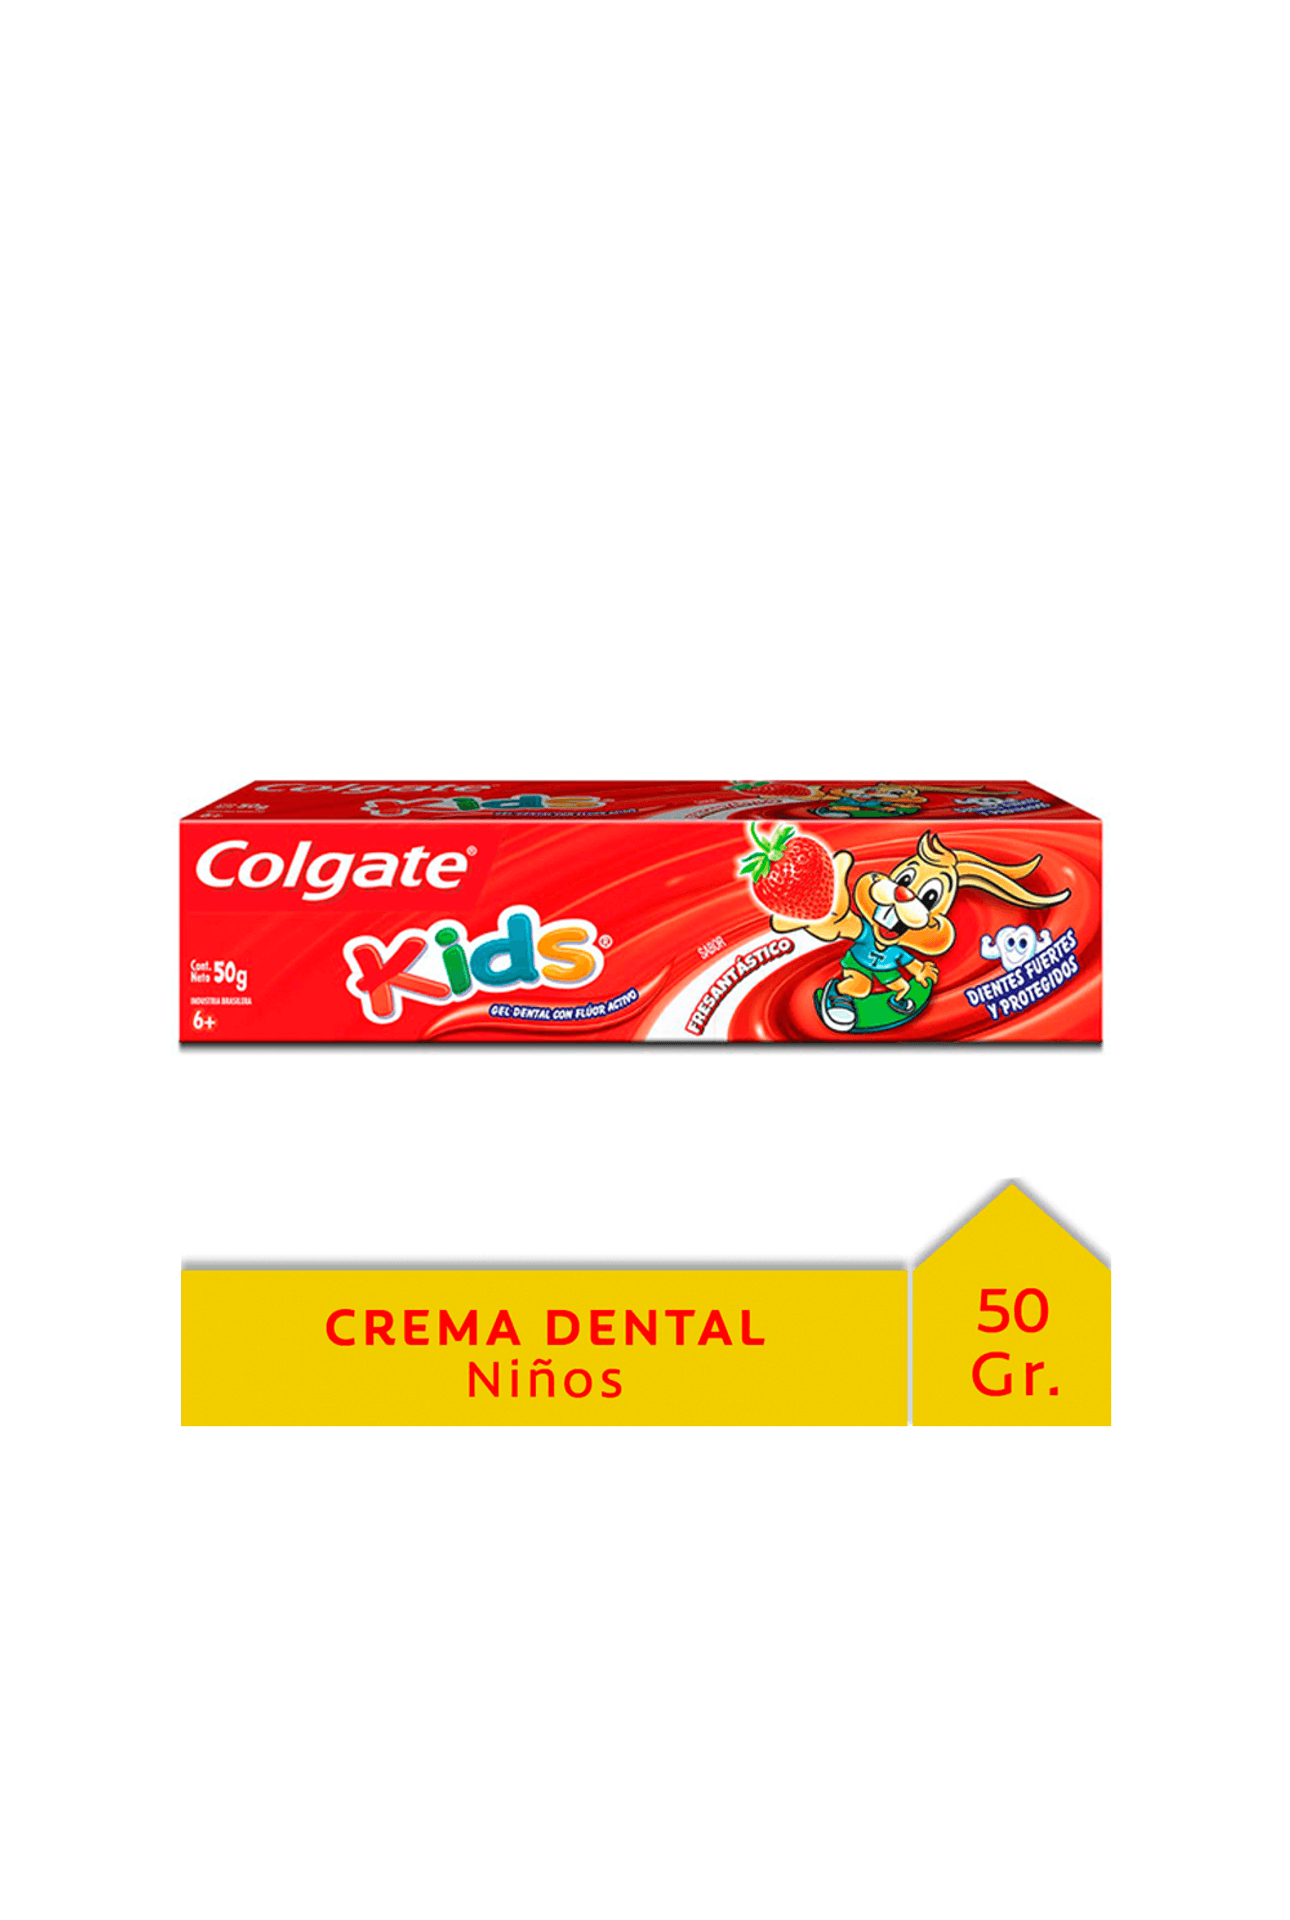 2109737_Colgate-Crema-Dental-Kids-Frutilla-x-50-gr_img1